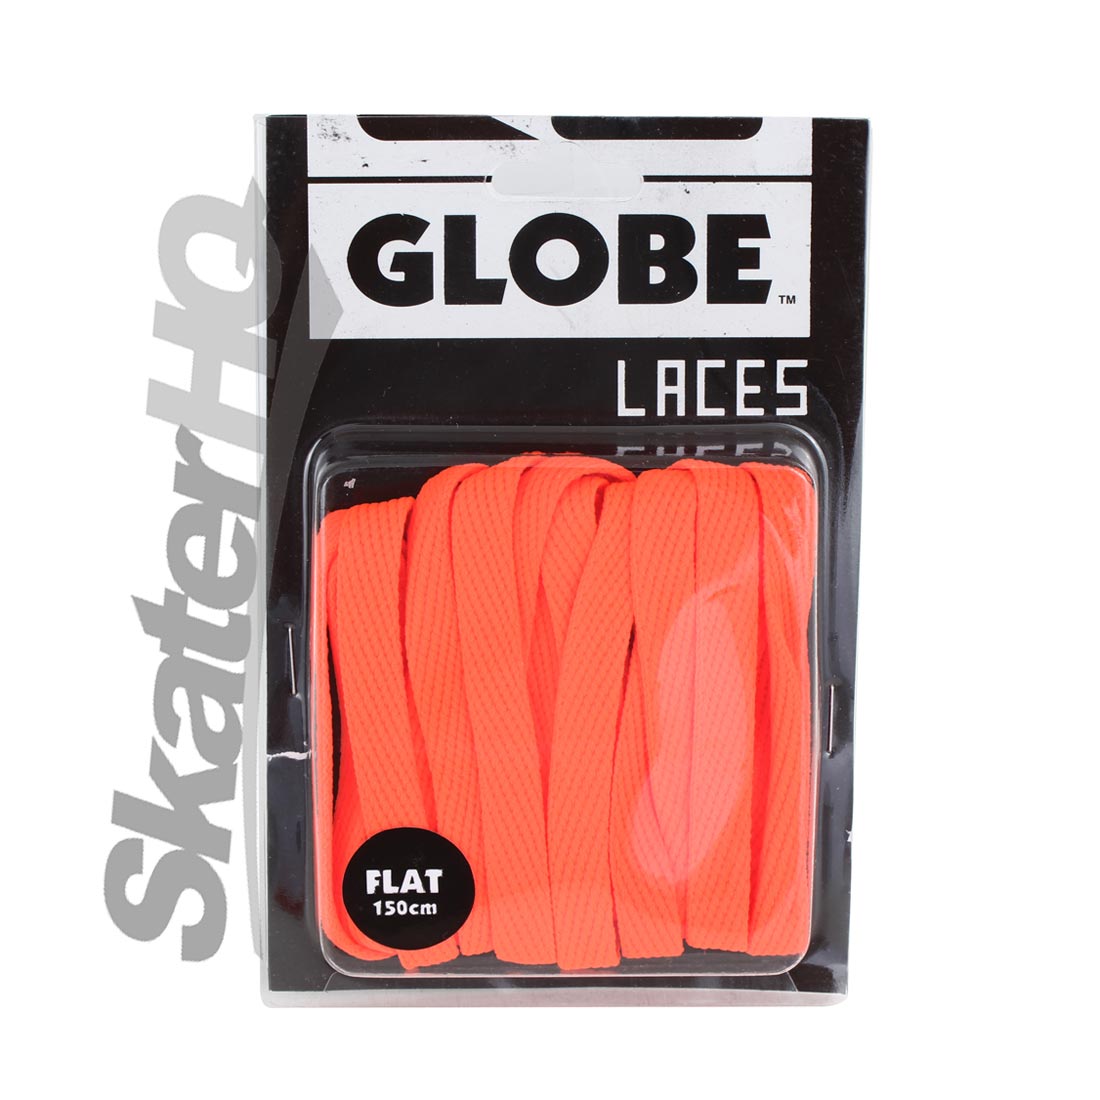 Globe Flat 150cm Laces - Orange Laces